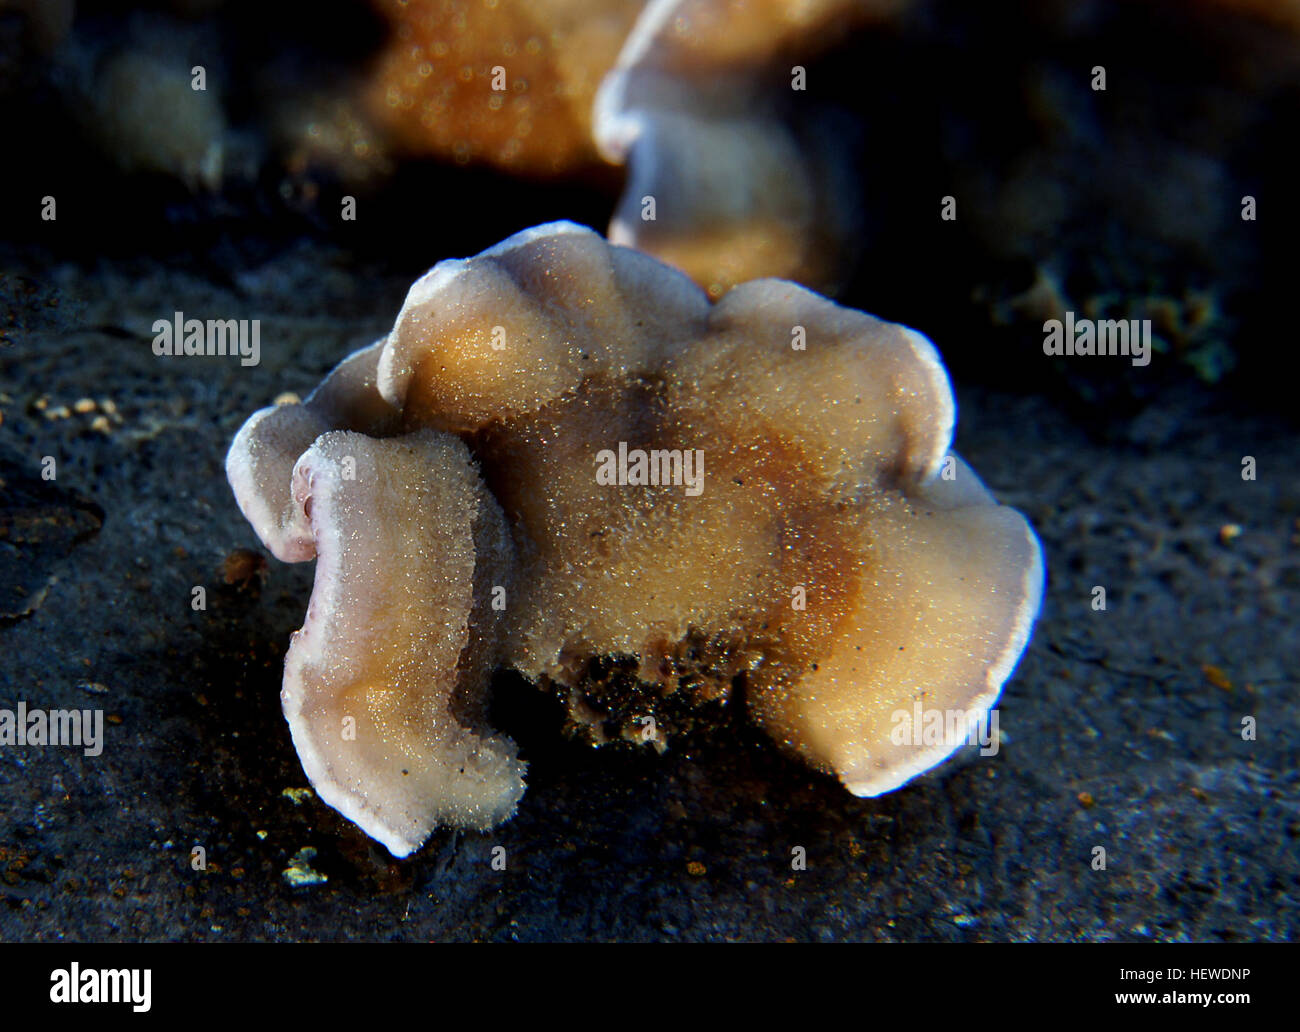 ication (,),Nature,Sony DSLR A580,Tamron 18-270,bracket fungi,fungi Stock Photo